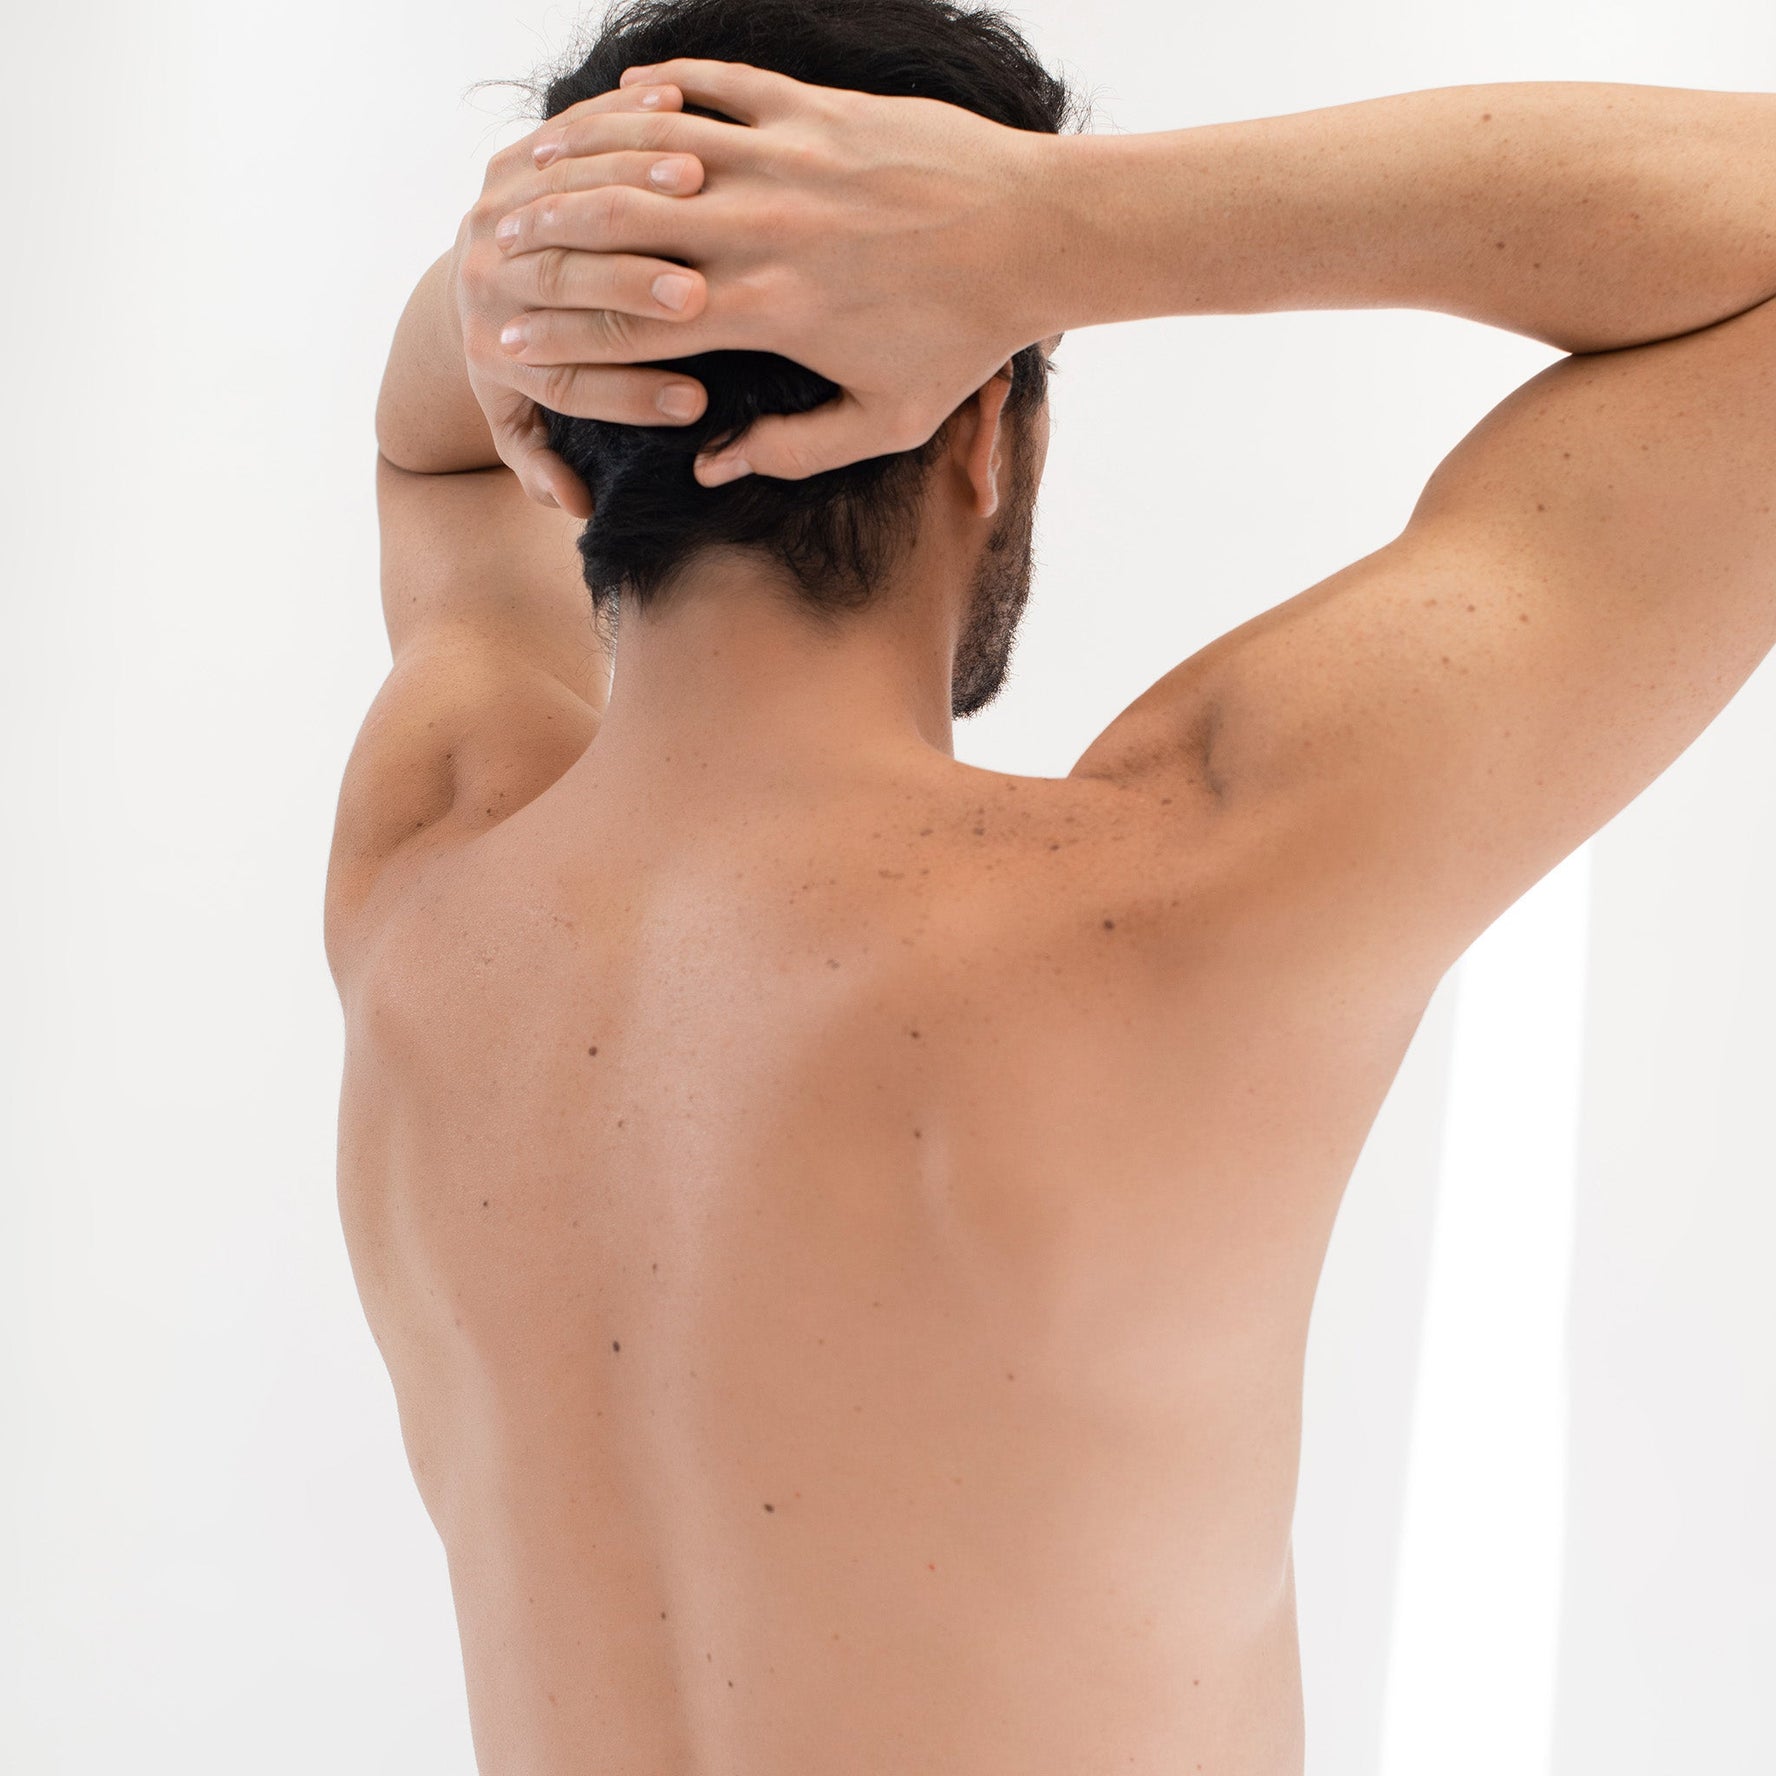 Espalda completa más hombros masculinos - Clínica Belenus